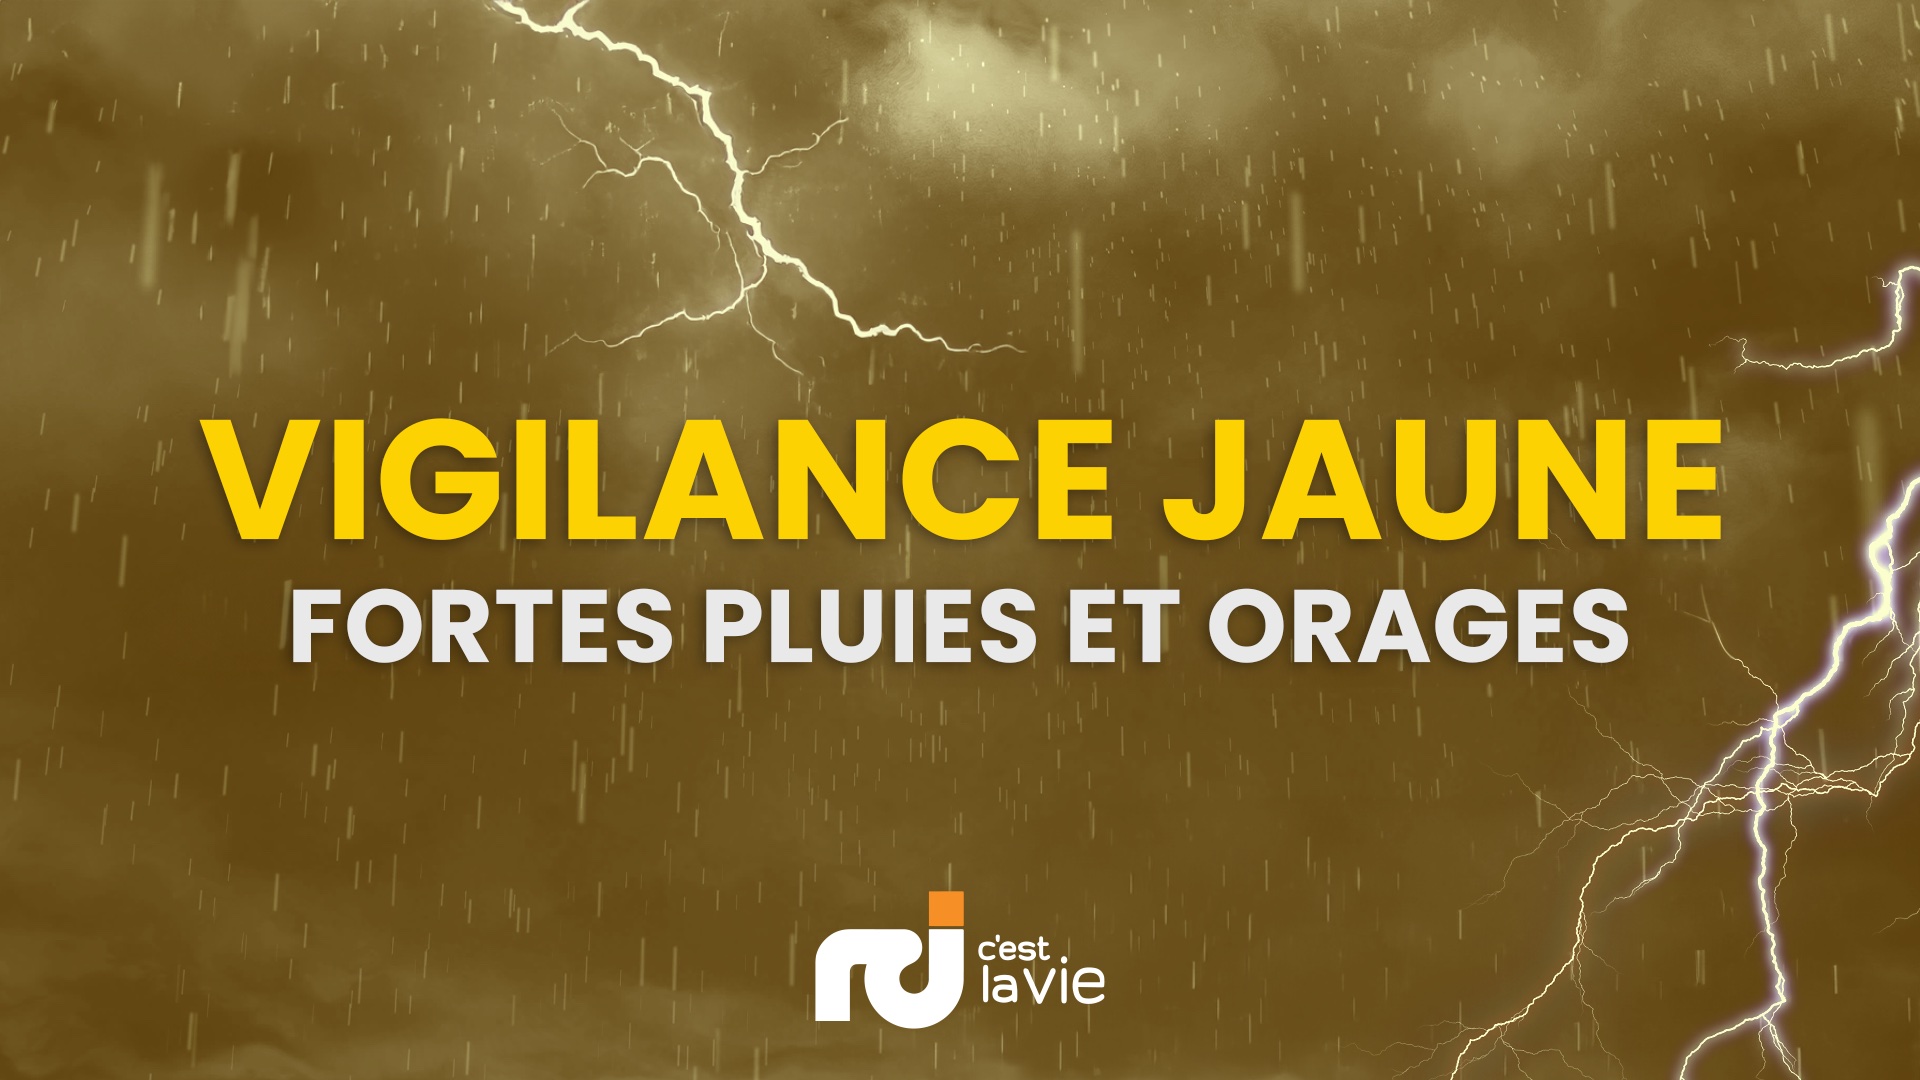     La Guadeloupe toujours placée en vigilance jaune pour fortes pluies et orages

